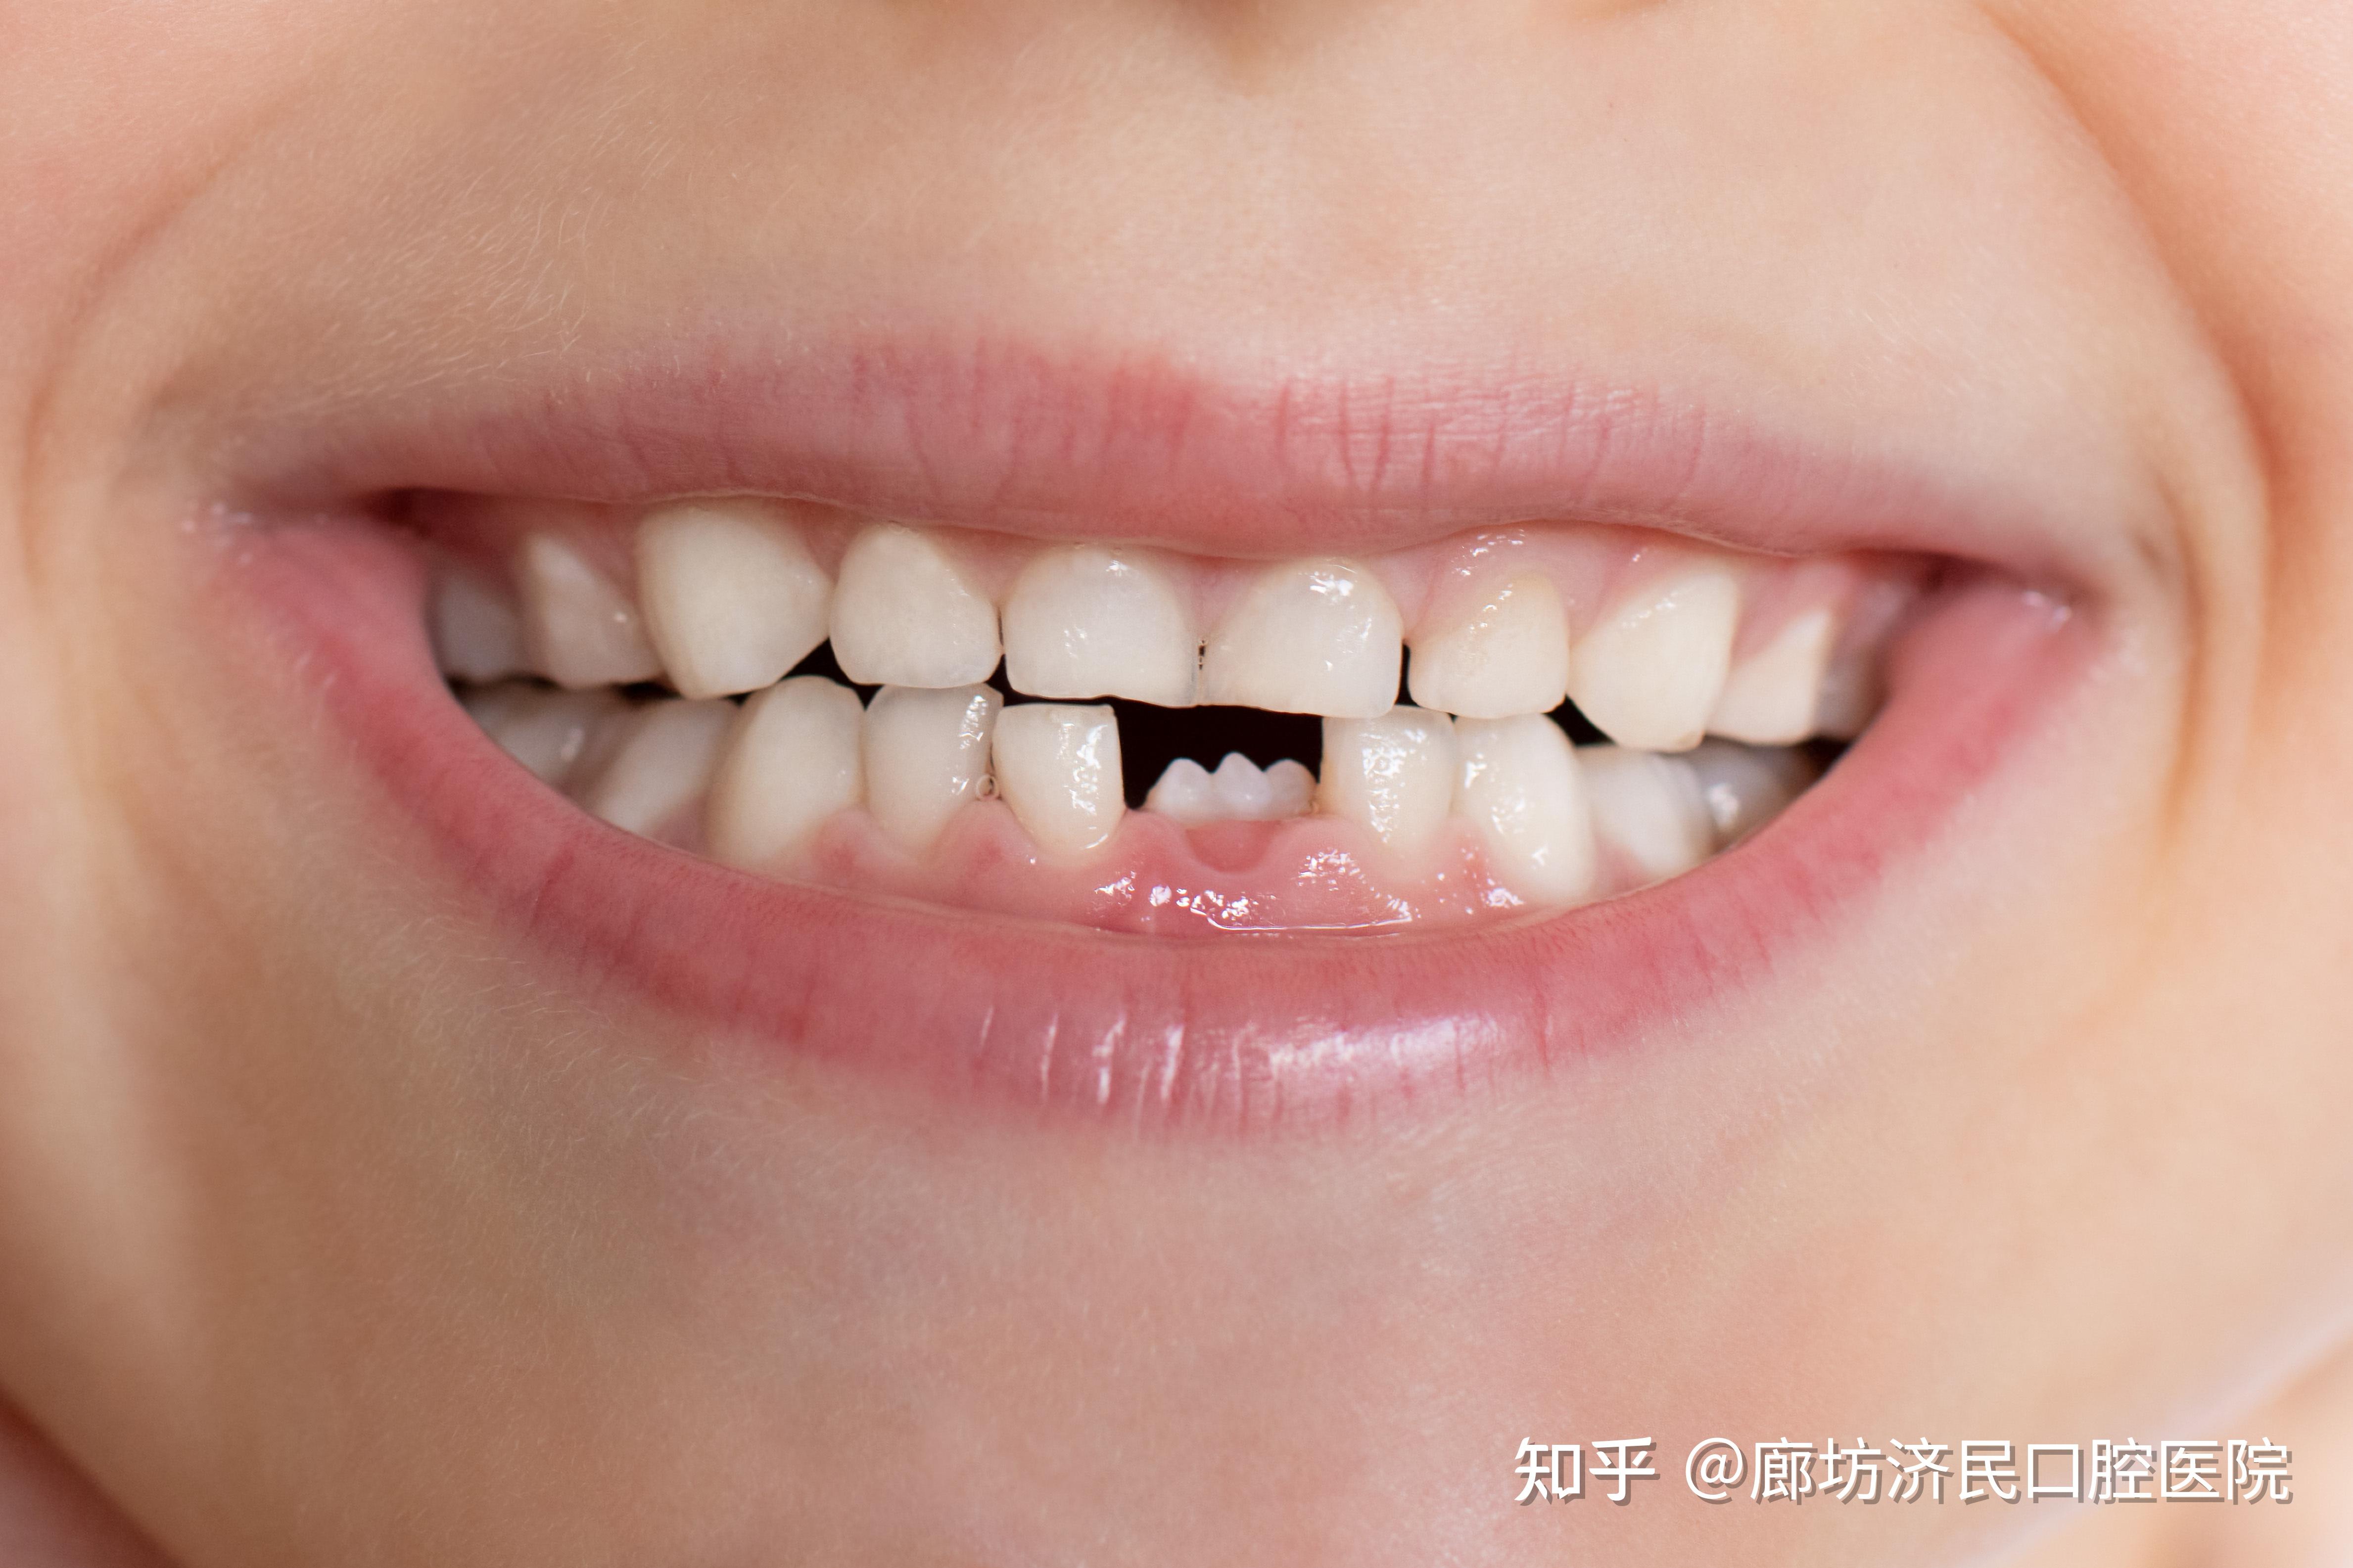 【附图】 S-ECC儿童广泛的右下第二乳磨牙龋坏及尚未完全萌出的右下第一恒磨牙龋坏 _口腔医学 | 天山医学院